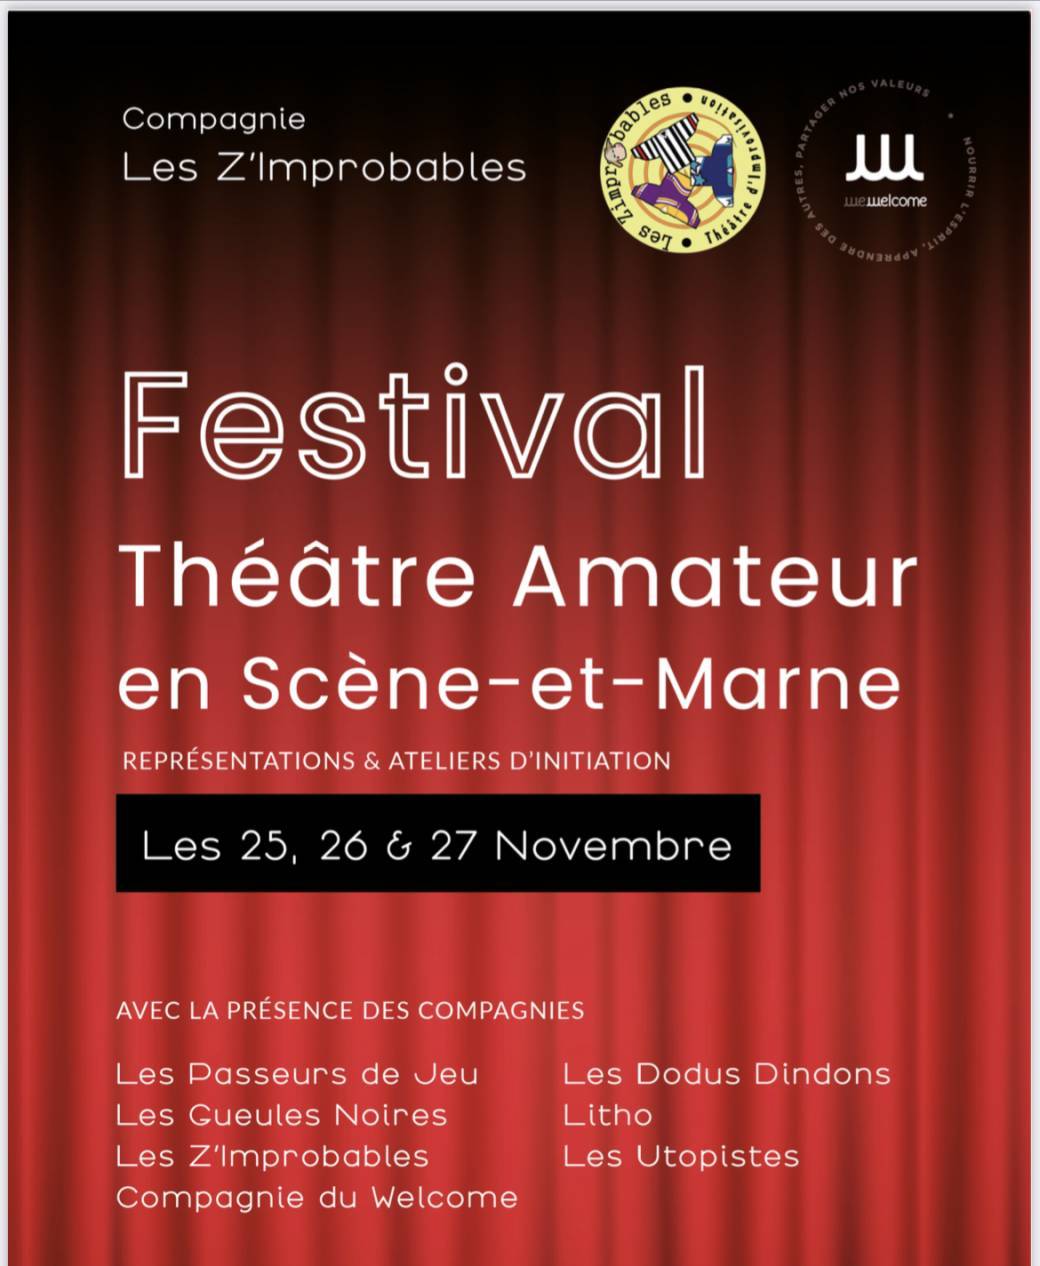 Festival Théâtre Amateur en Scène-et-Marne